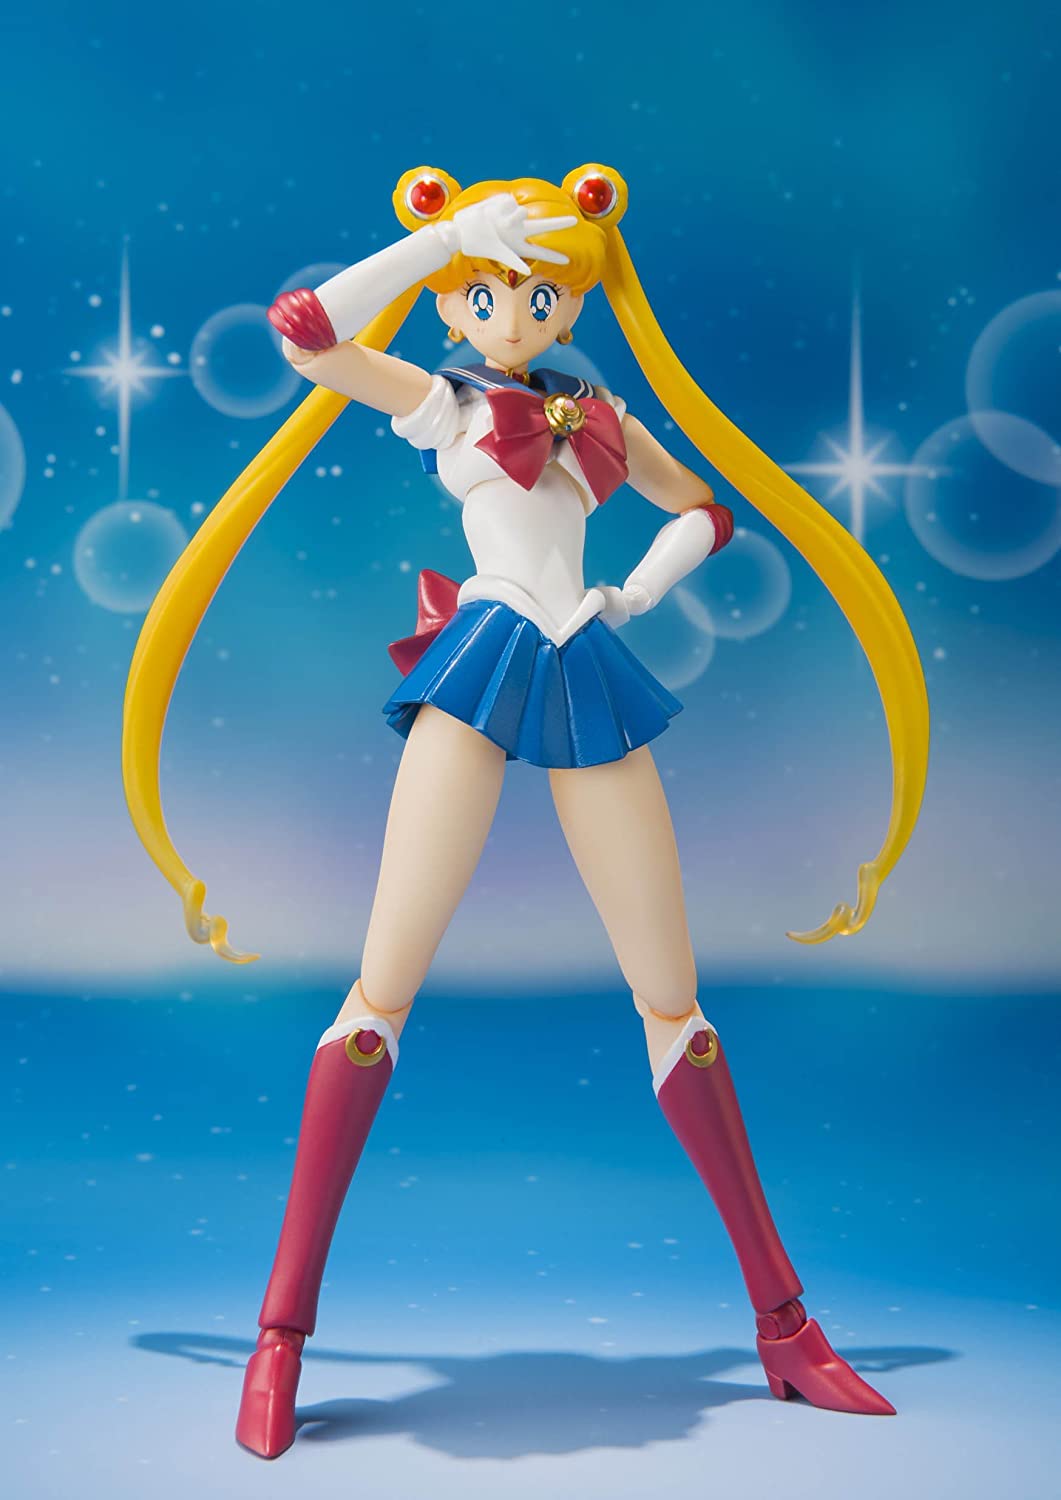 S.H. Figuarts Sailor Moon with Luna Action Figure 1st Edition W/ Bonus Face